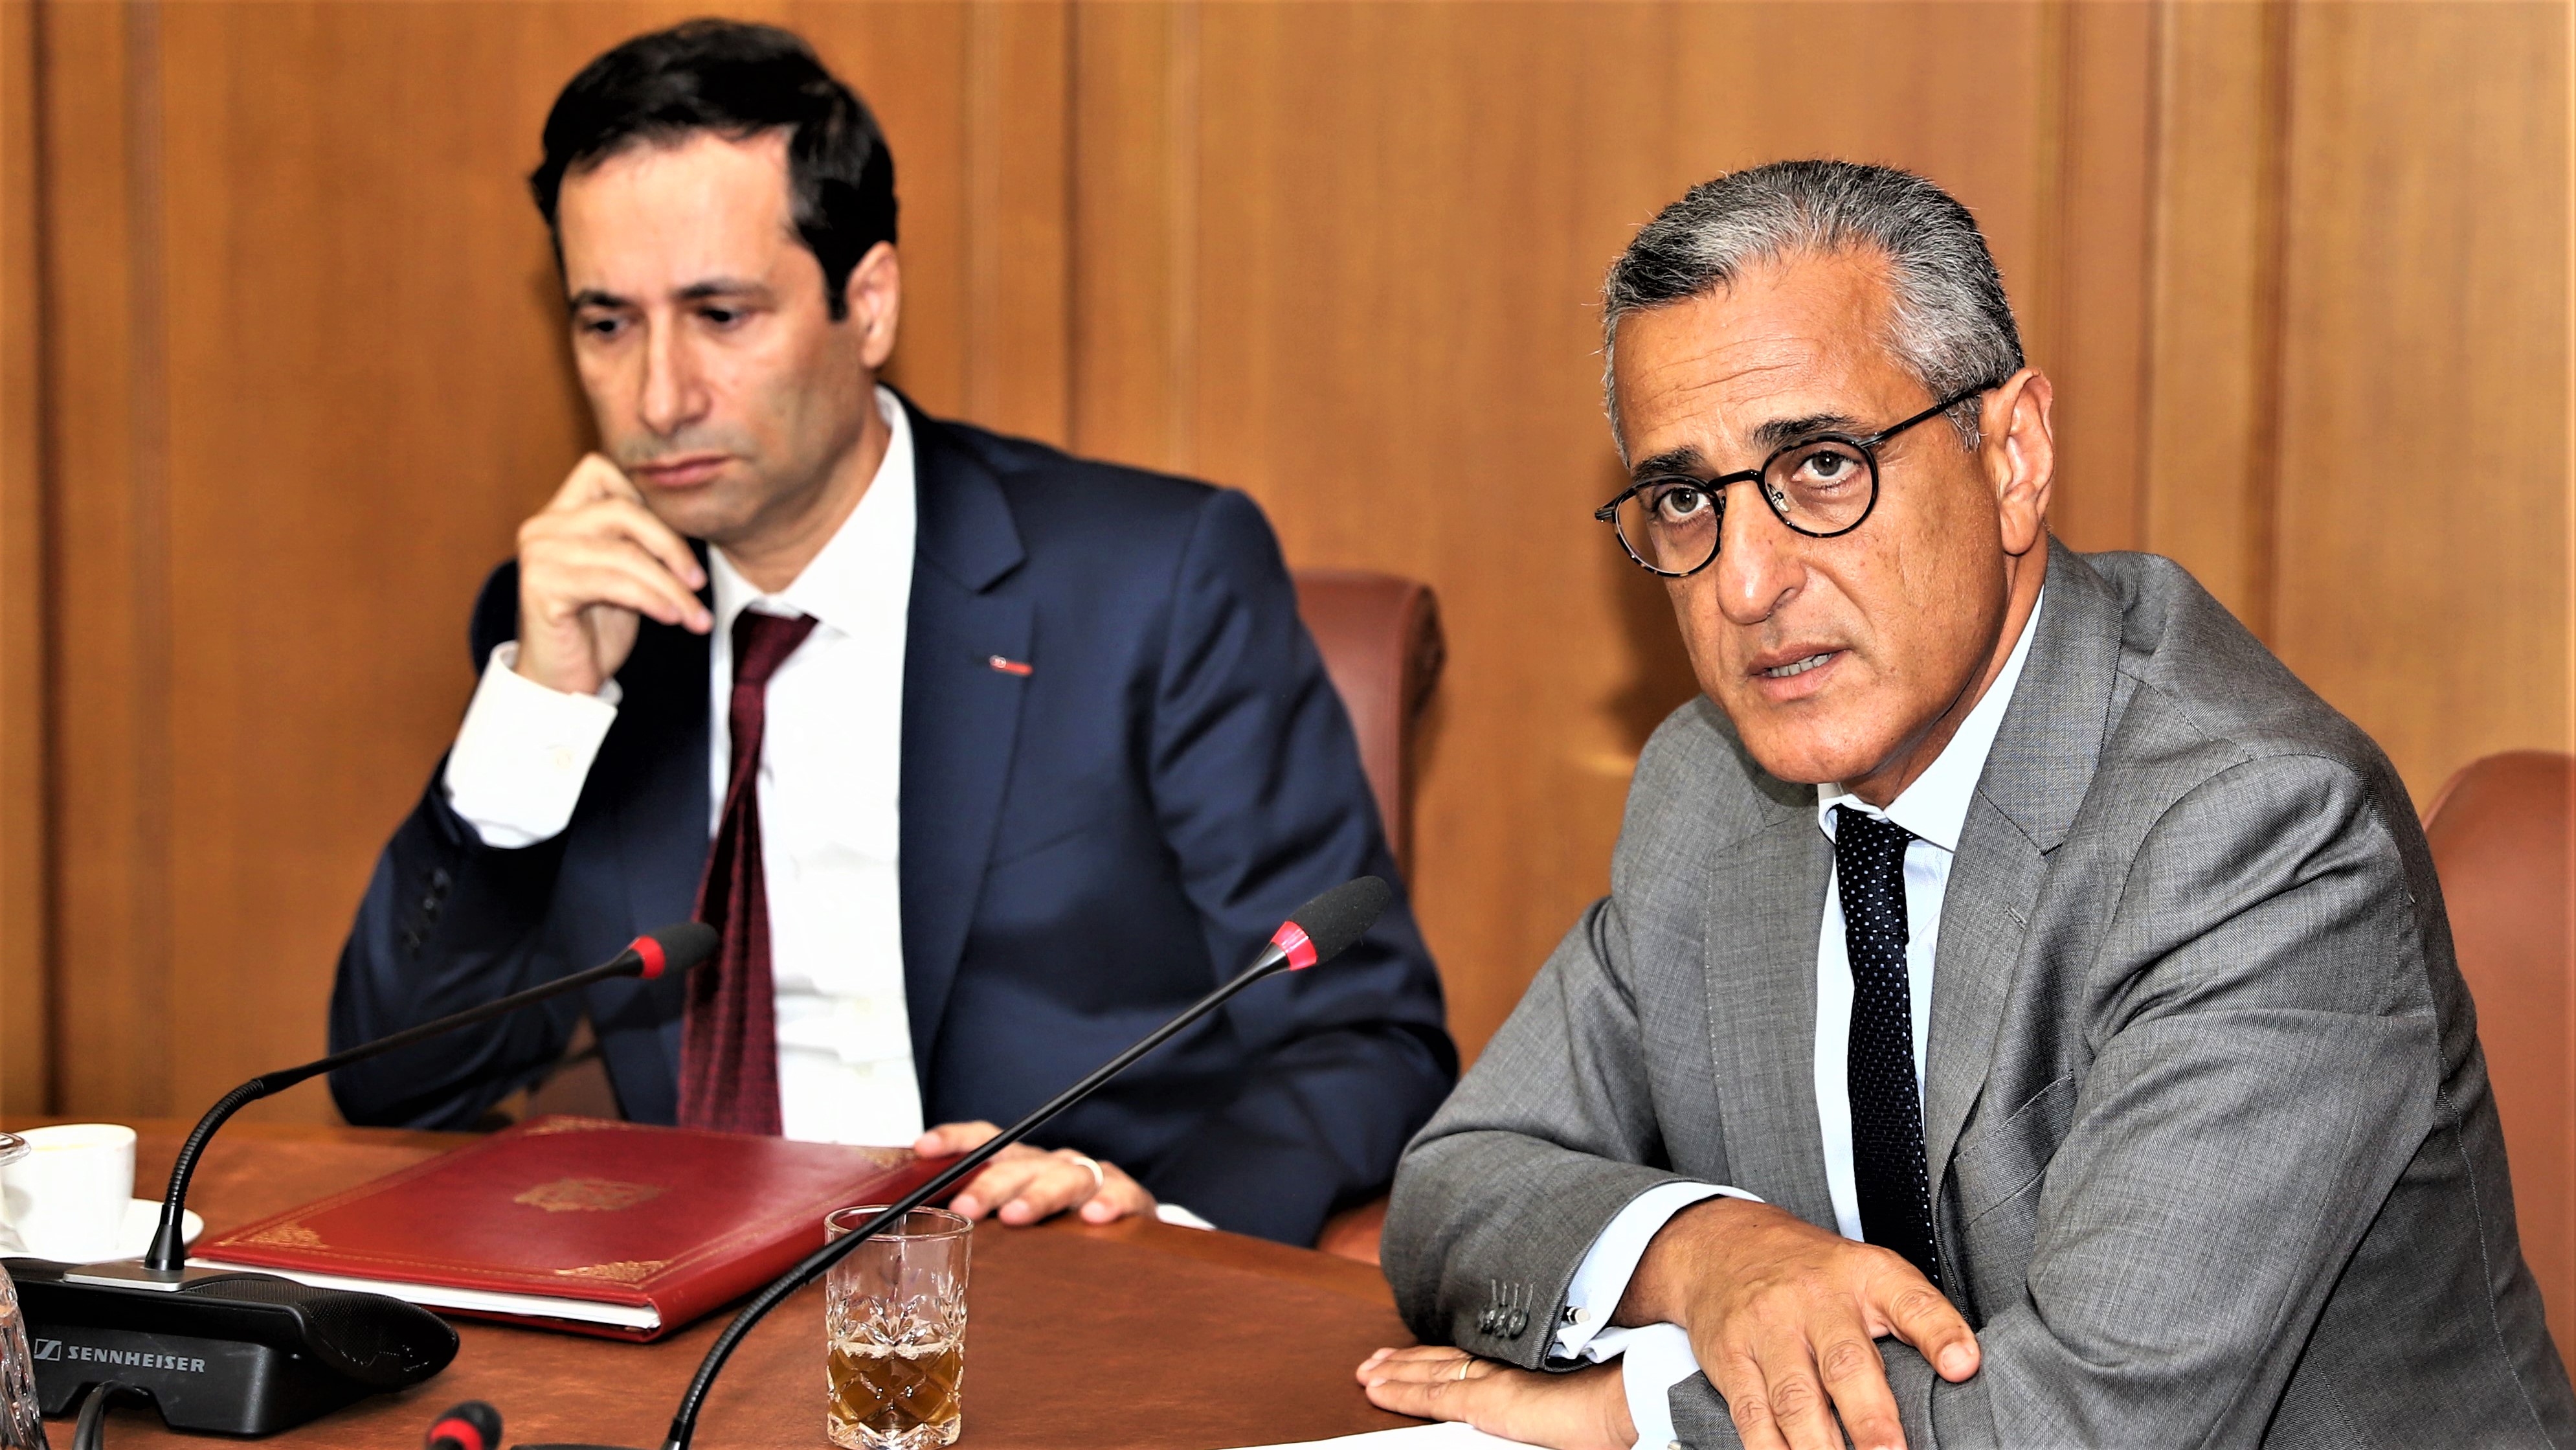 M. Karim Tajmouati intervenant lors de la présentation des prix des transactions immobilières et foncières en la présence du ministre de l'Economie et des Finances, Mohammed Benchaaboun. (Ph. MAP, Juin 2019).